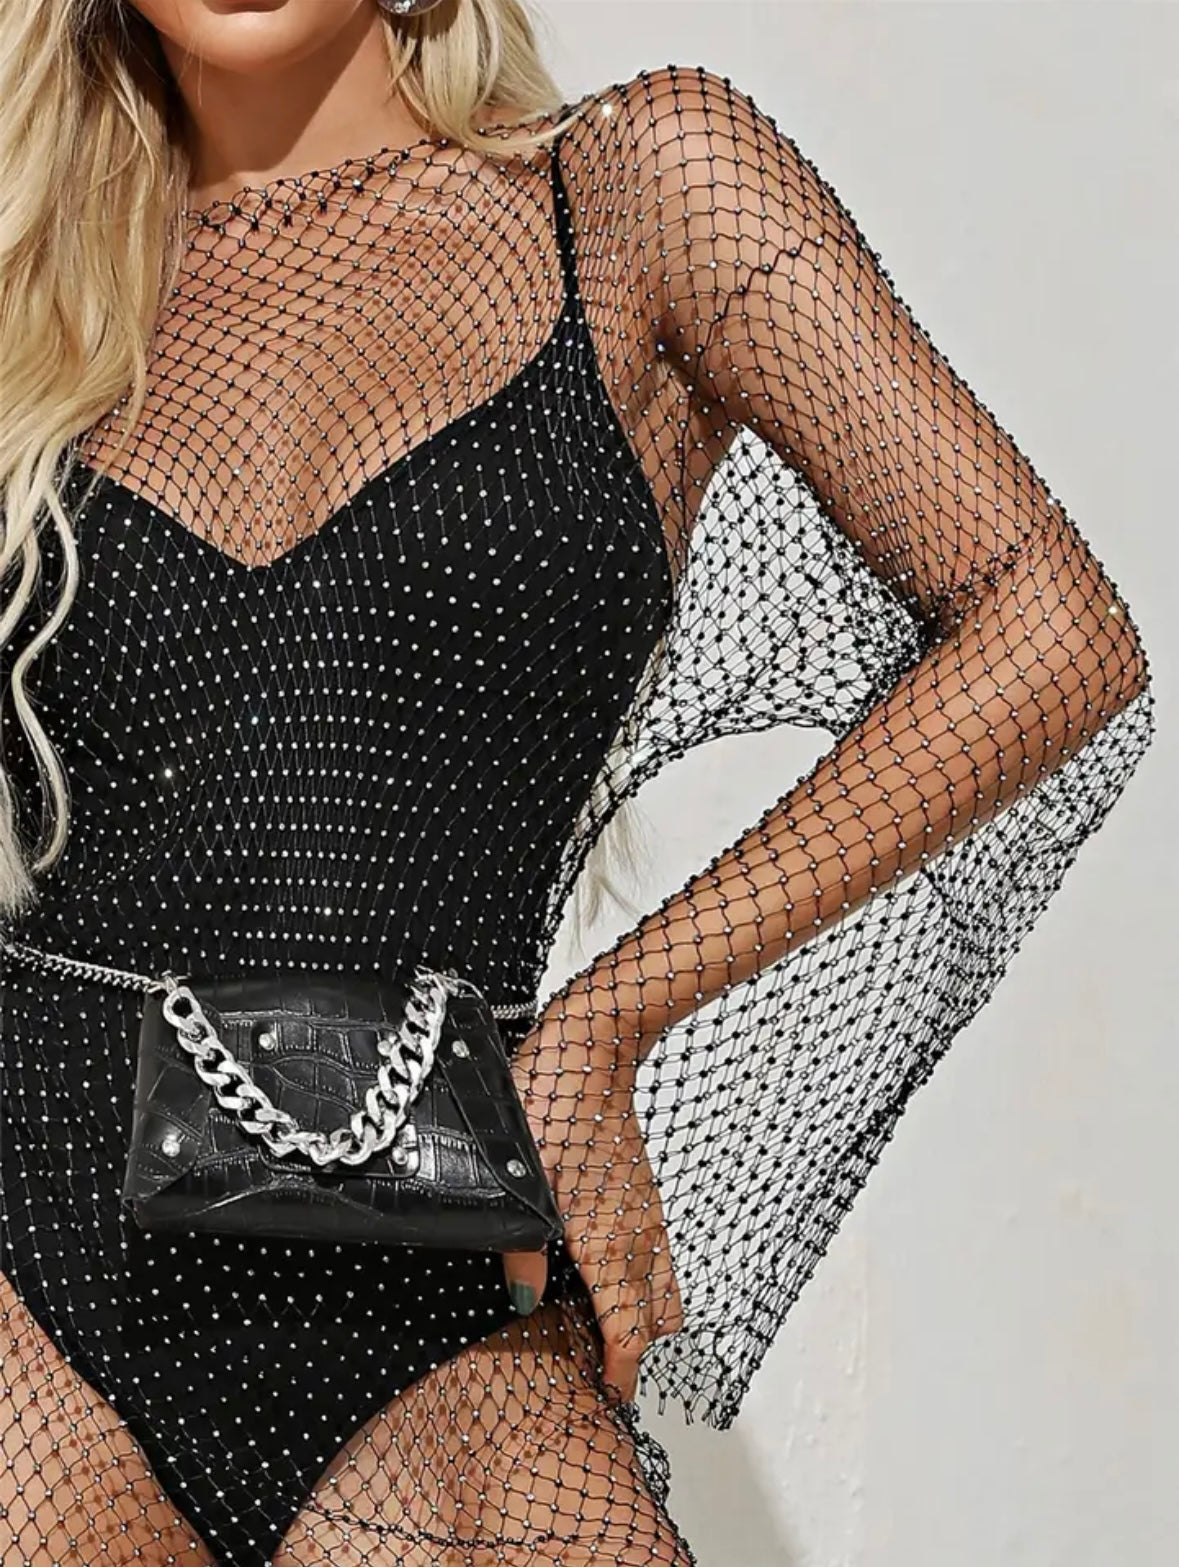 Luxe Noir Mesh Elegance - Black Fishnet Dress for Women